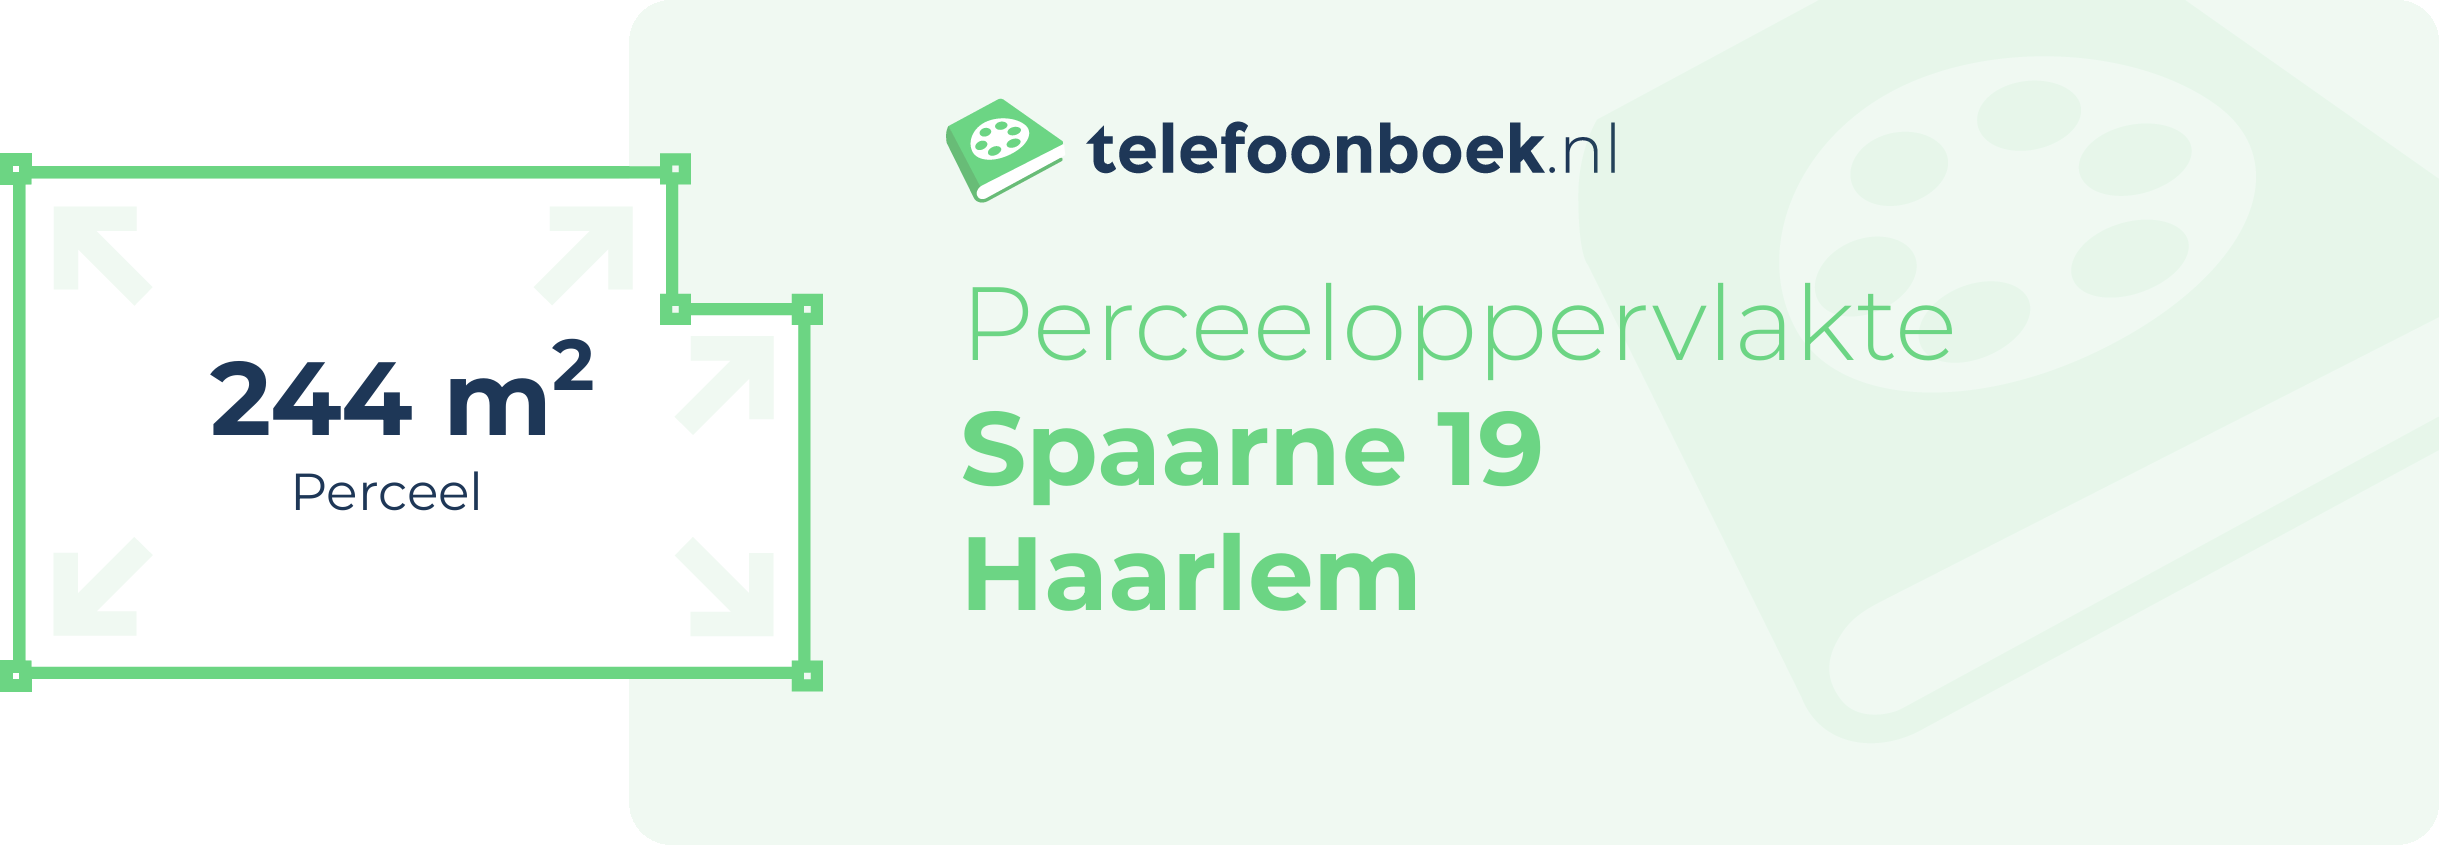 Perceeloppervlakte Spaarne 19 Haarlem